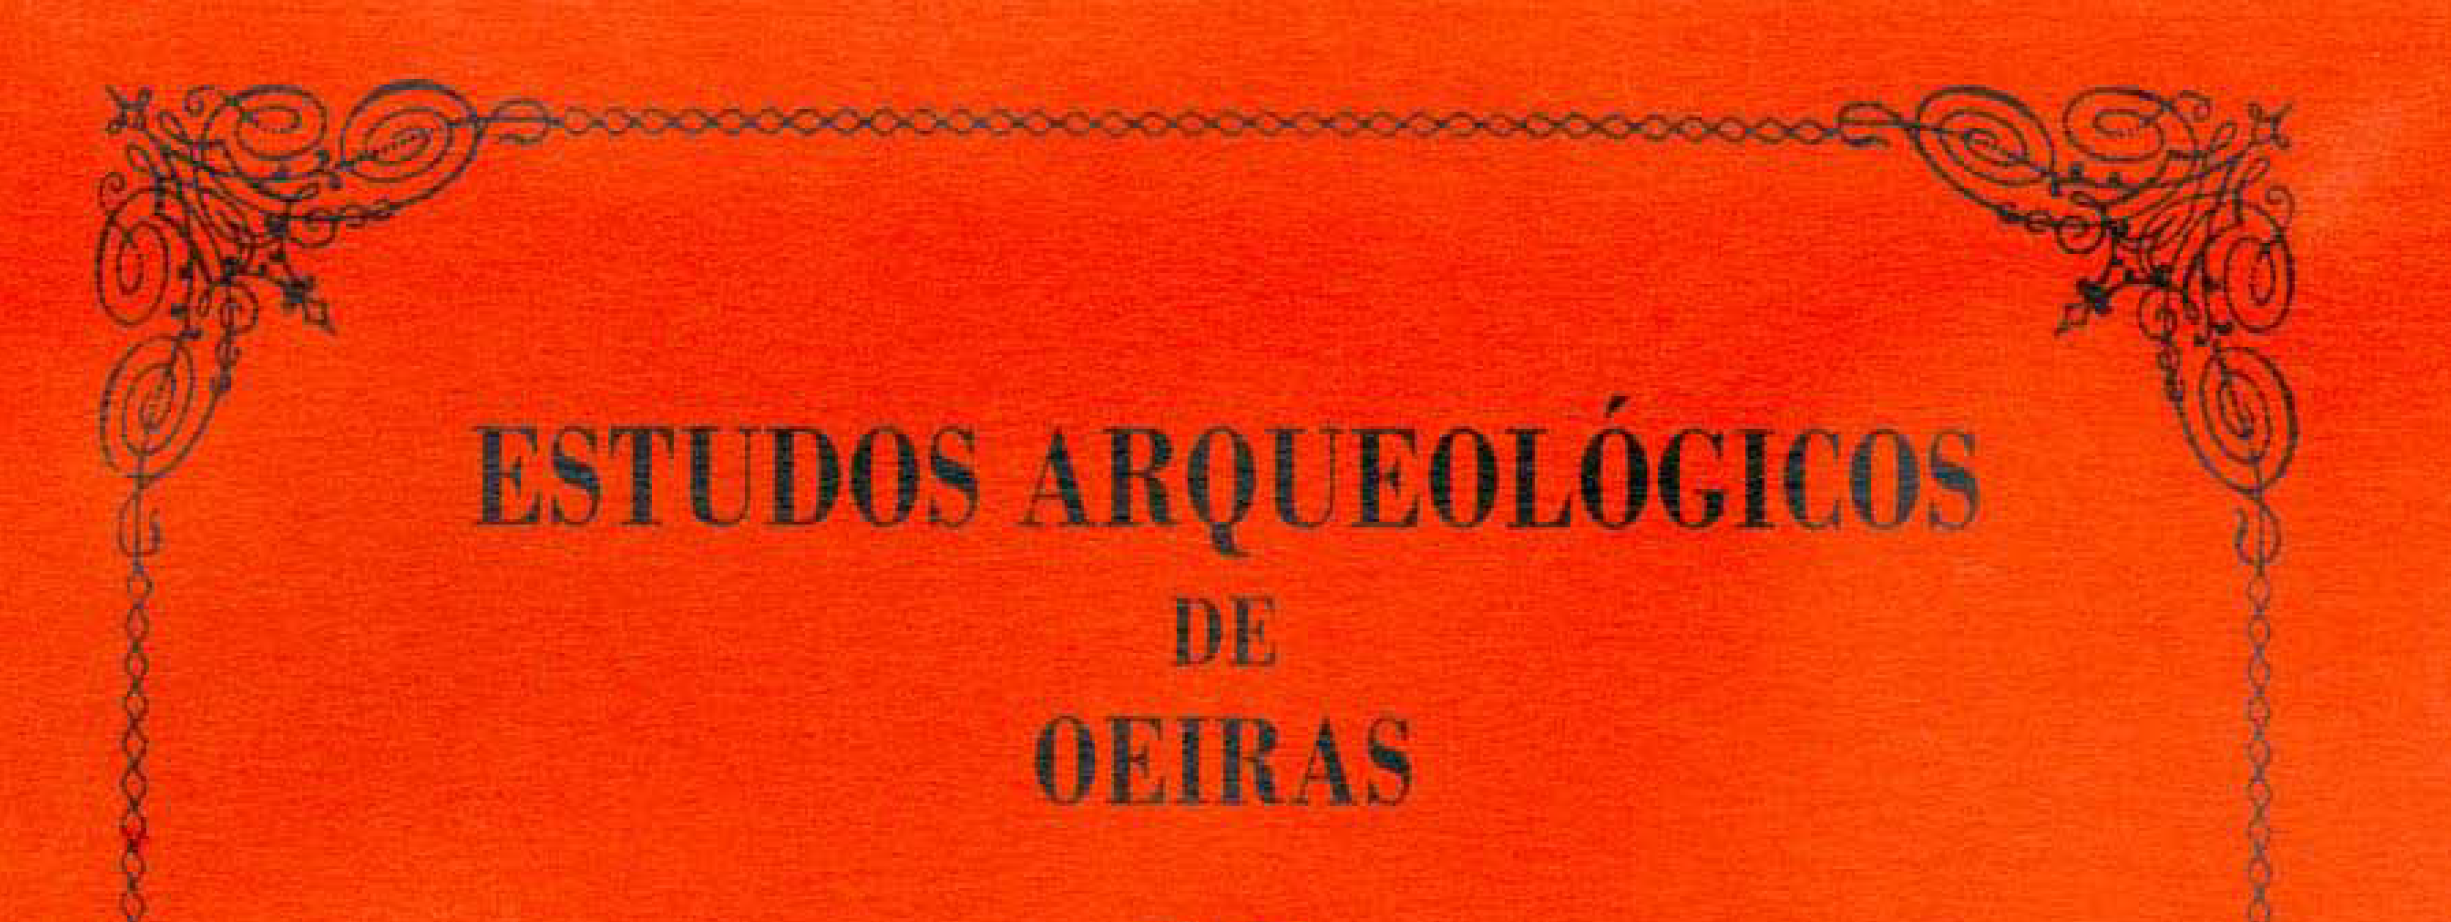 Estudos Arqueológicos de Oeiras, 23